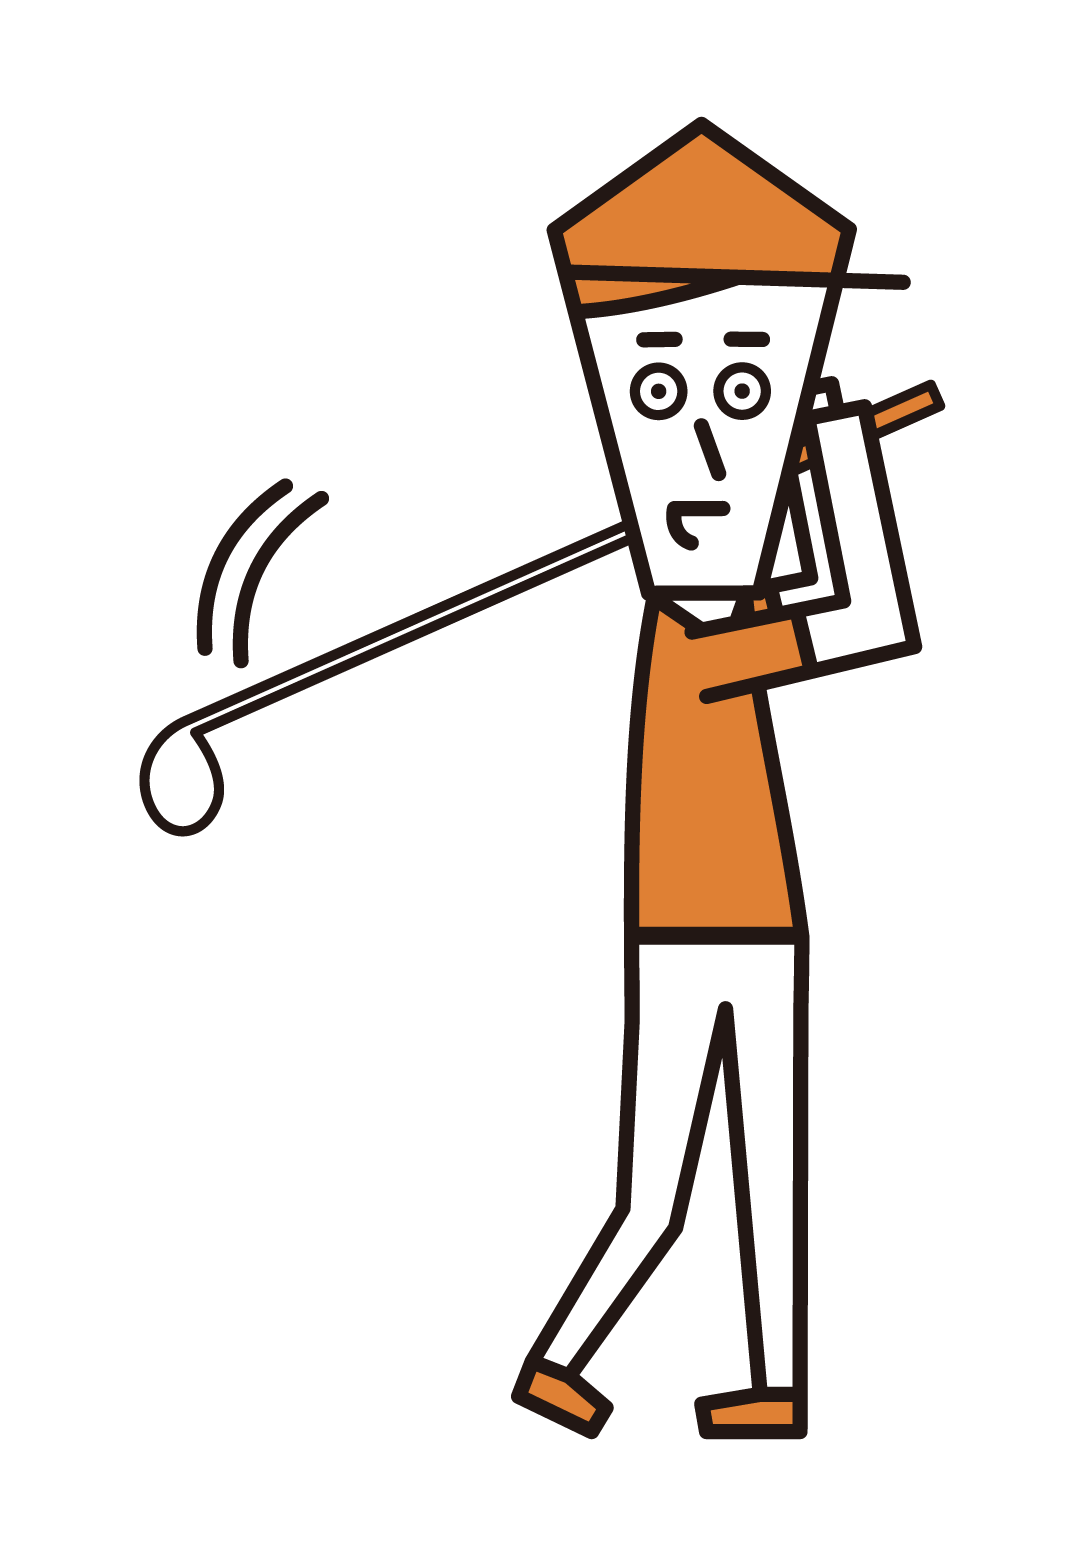 골프를 치는 척하는 남자의 삽화 (남성)